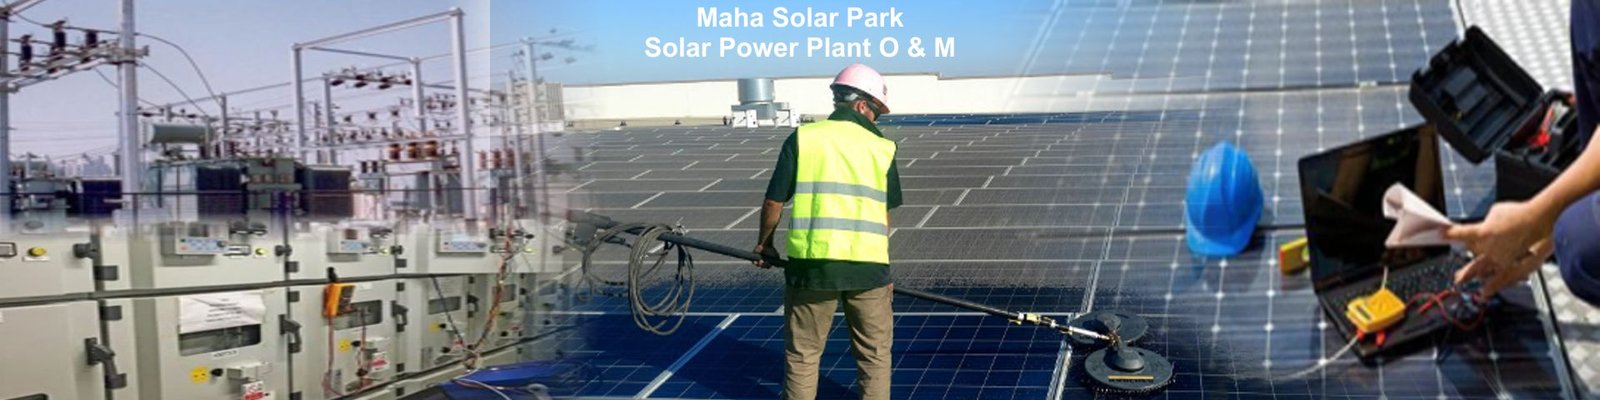 Maha Solar Park O&M